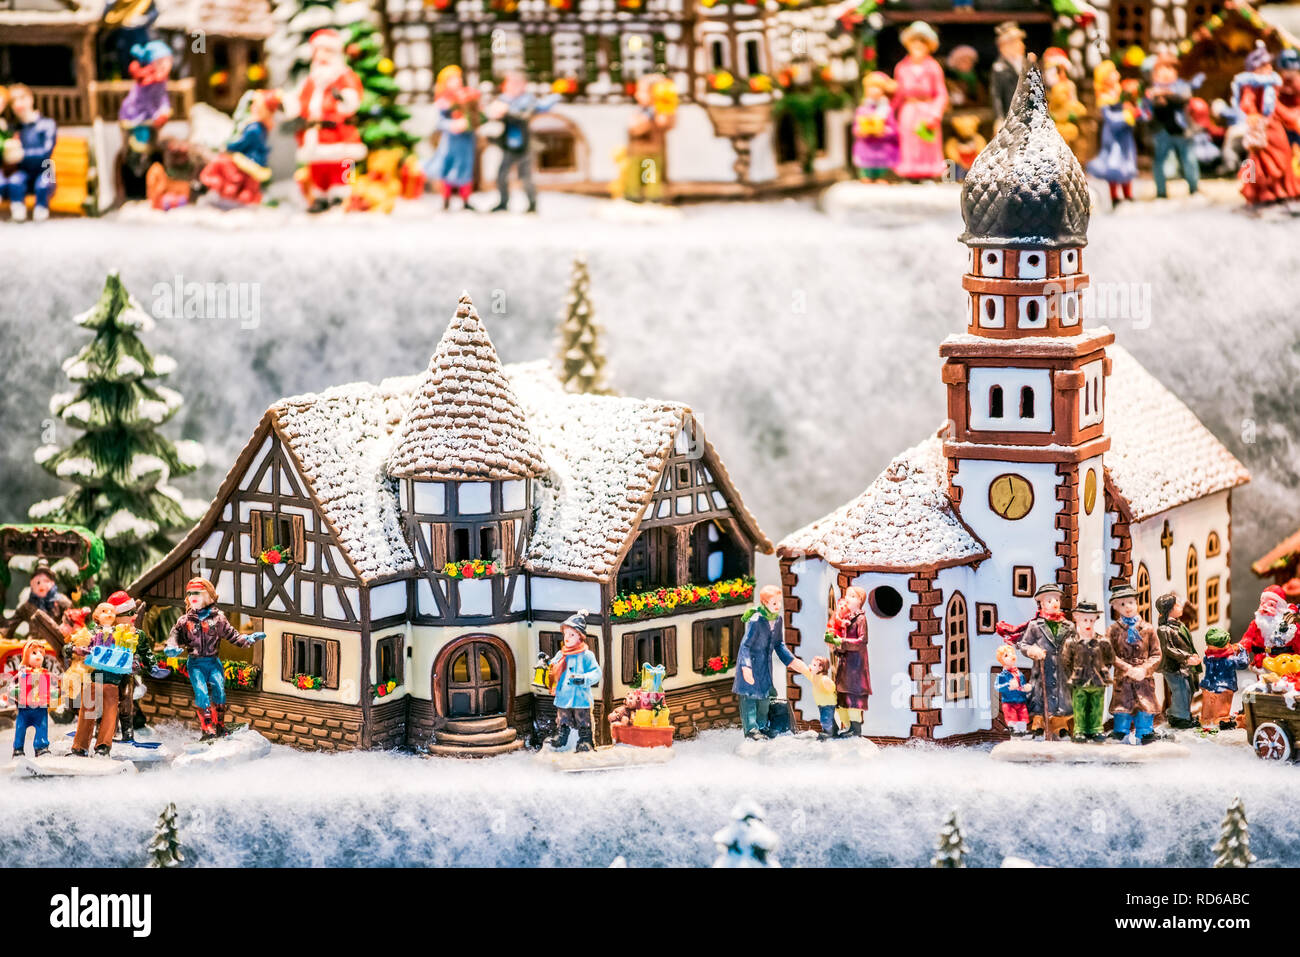 Salzburg, Salzburger Christkindlmarkt Lebkuchenhäuser Weihnachtsmarkt Dekorationen in Österreich. Stockfoto